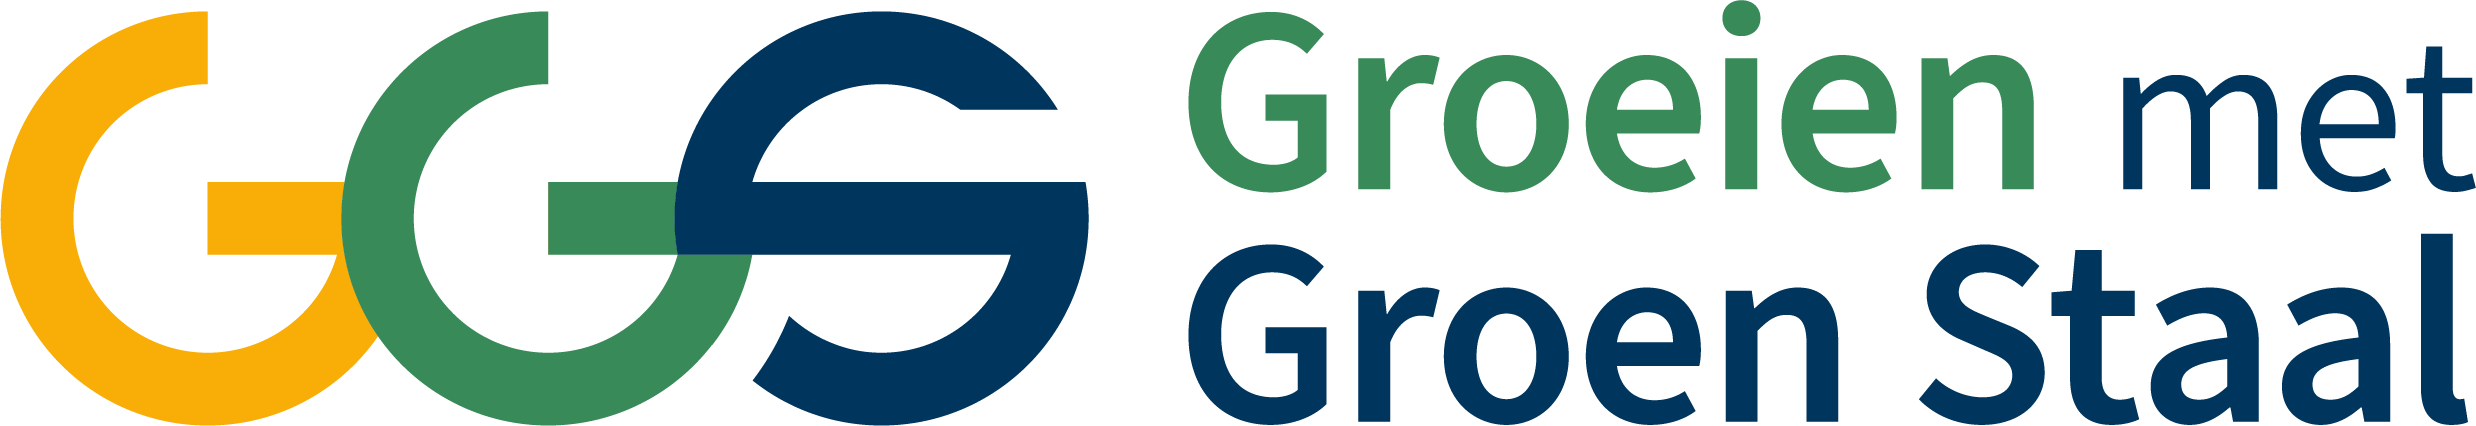 ggs logo rgb